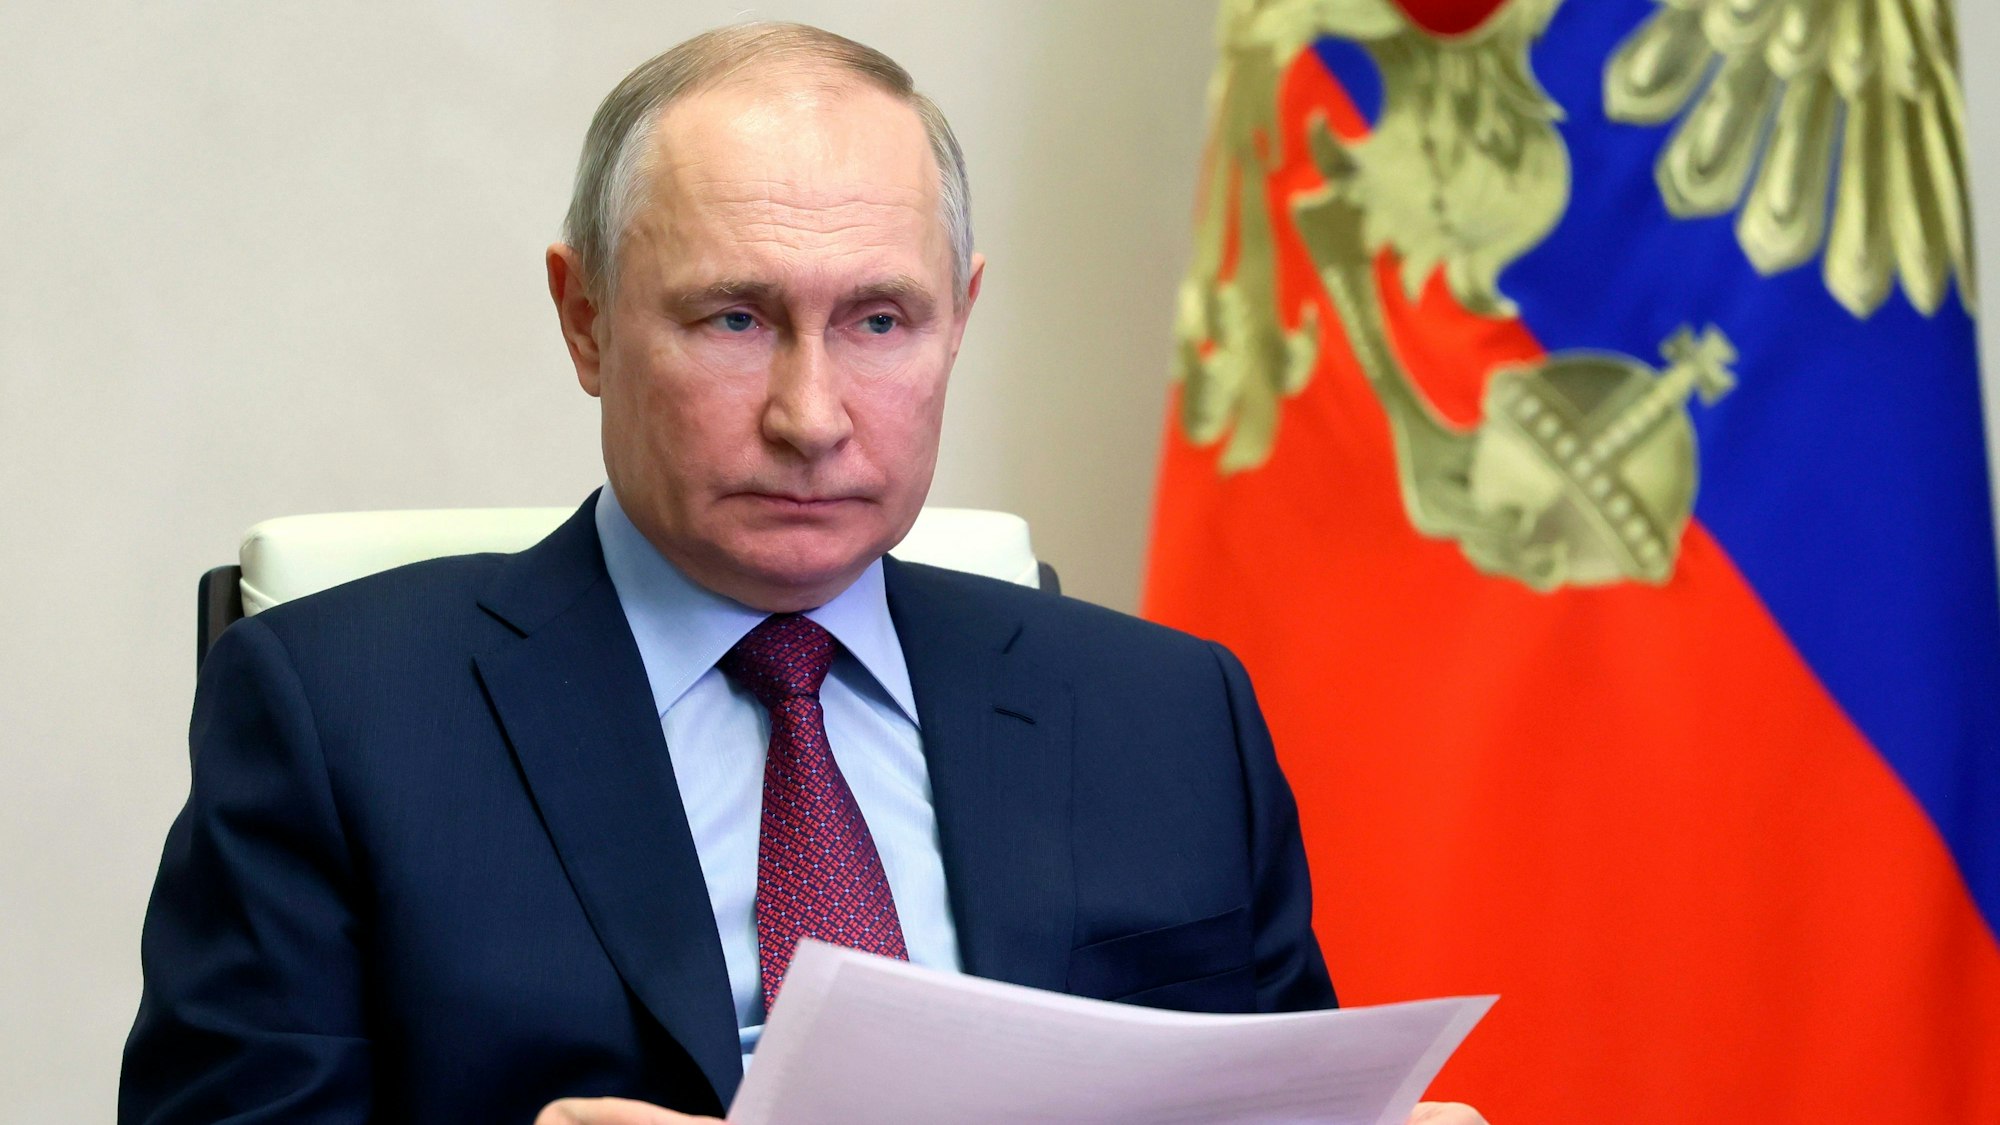 Wladimir Putin, Präsident von Russland, sitzt bei der Teilnahme an einer Videokonferenz in der Nowo-Ogarjowo-Residenz neben einer Russland-Flagge.